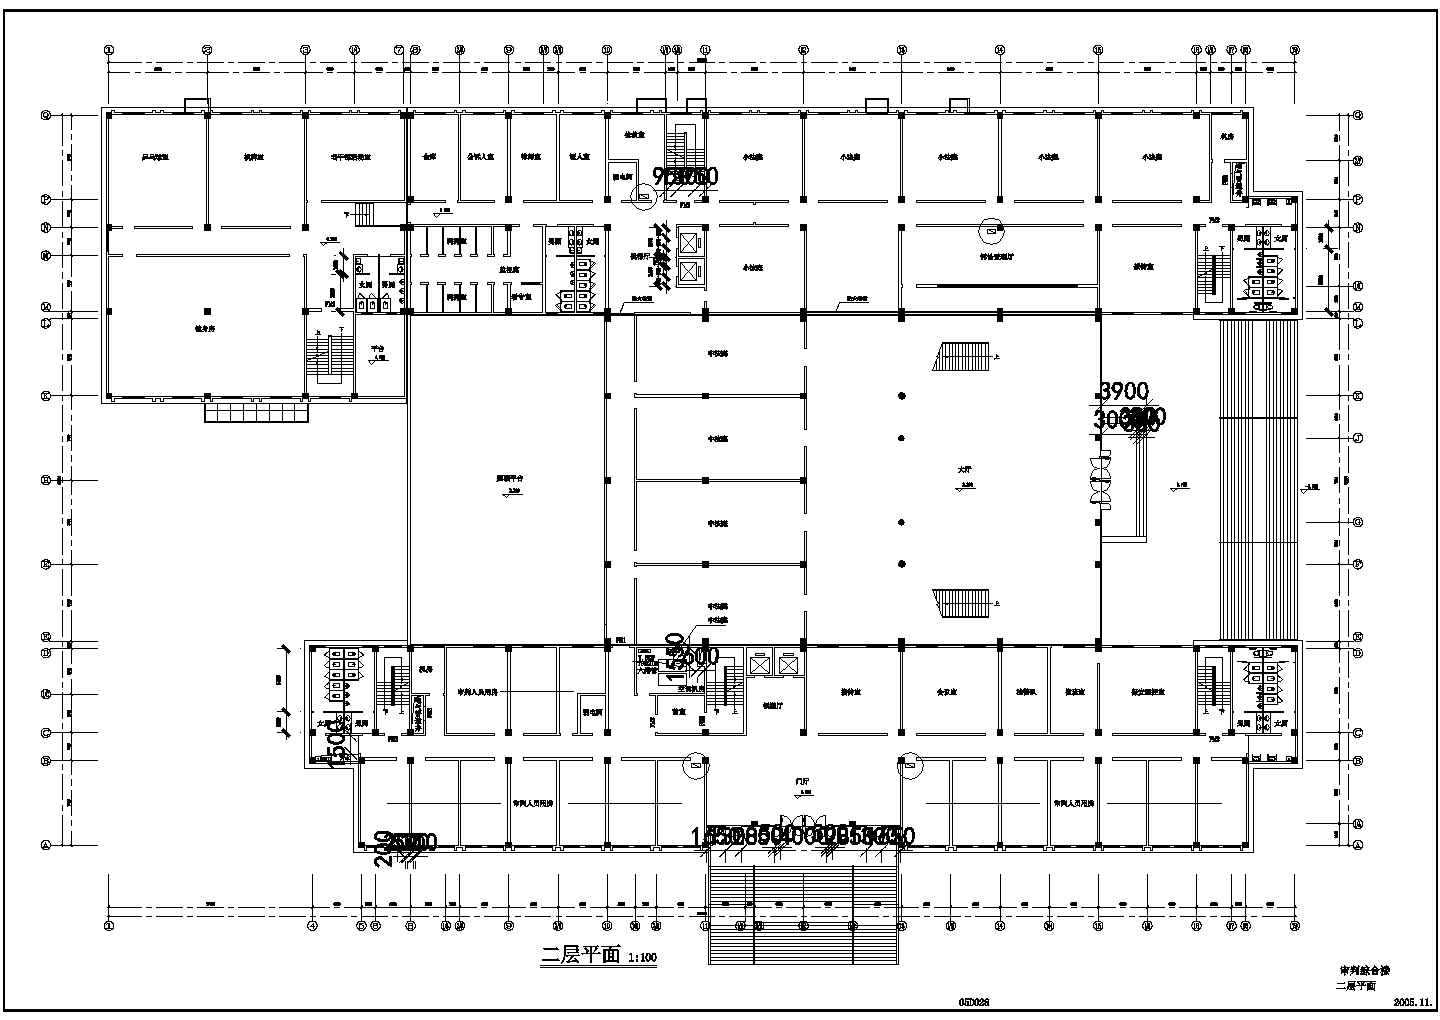 多层综合楼大型地源热泵系统设计cad施工图(含总平面图)